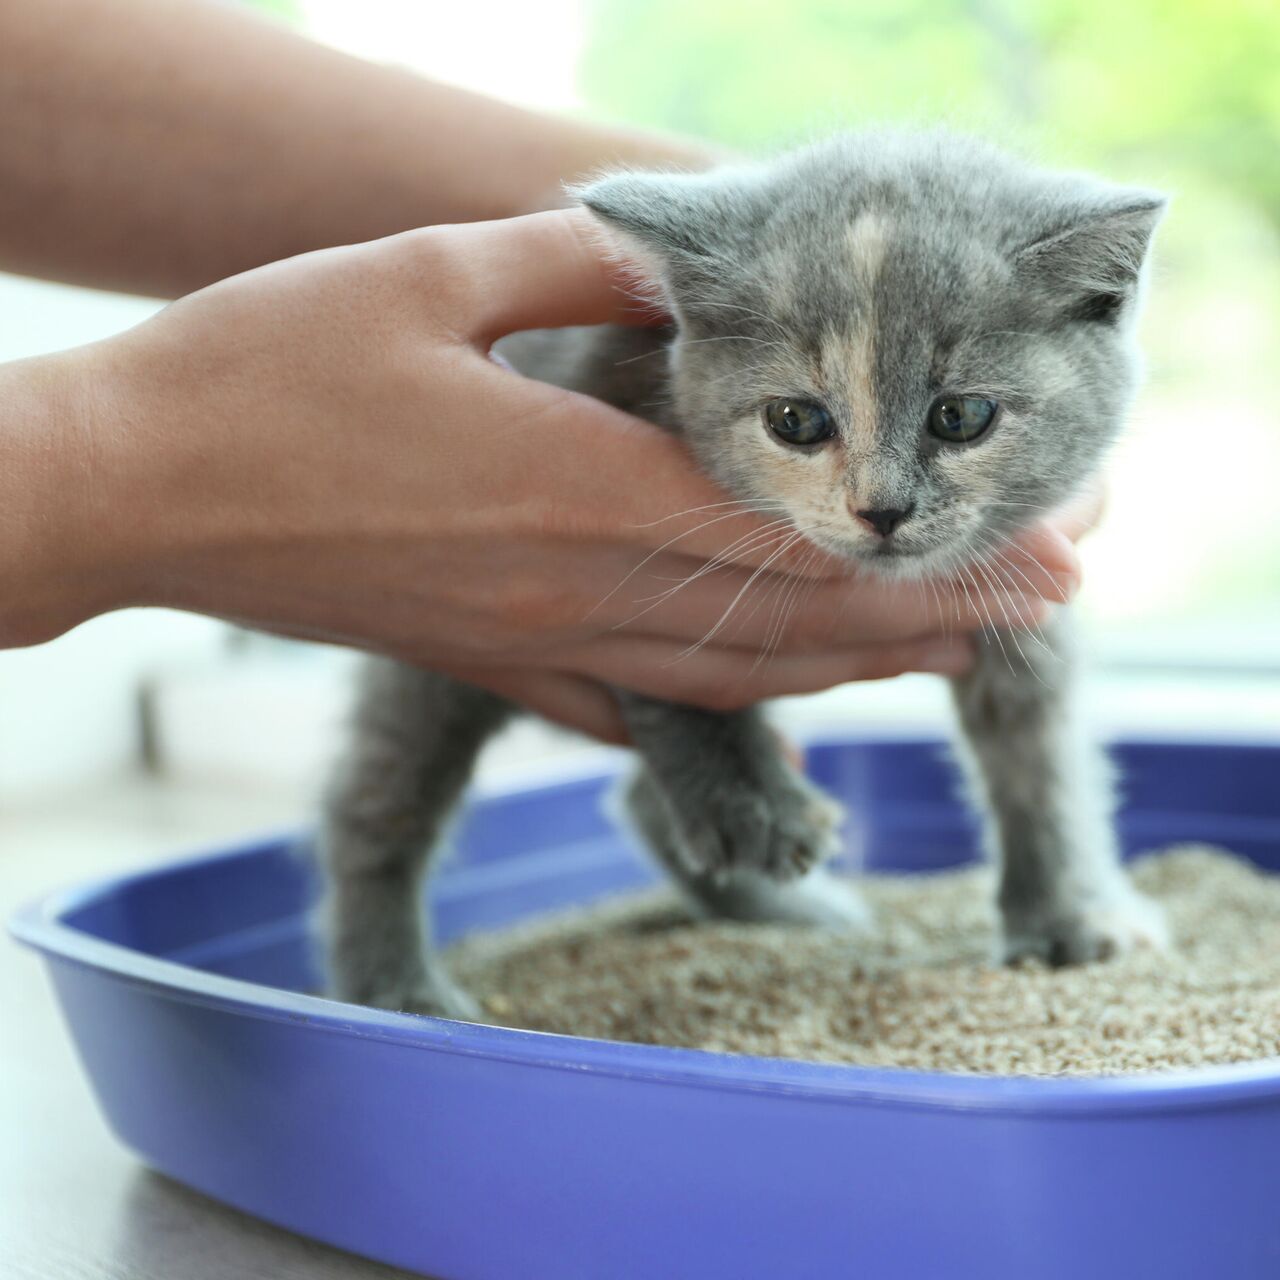 Как приучить котенка к лотку с наполнителем быстро и легко: советы и  рекомендации